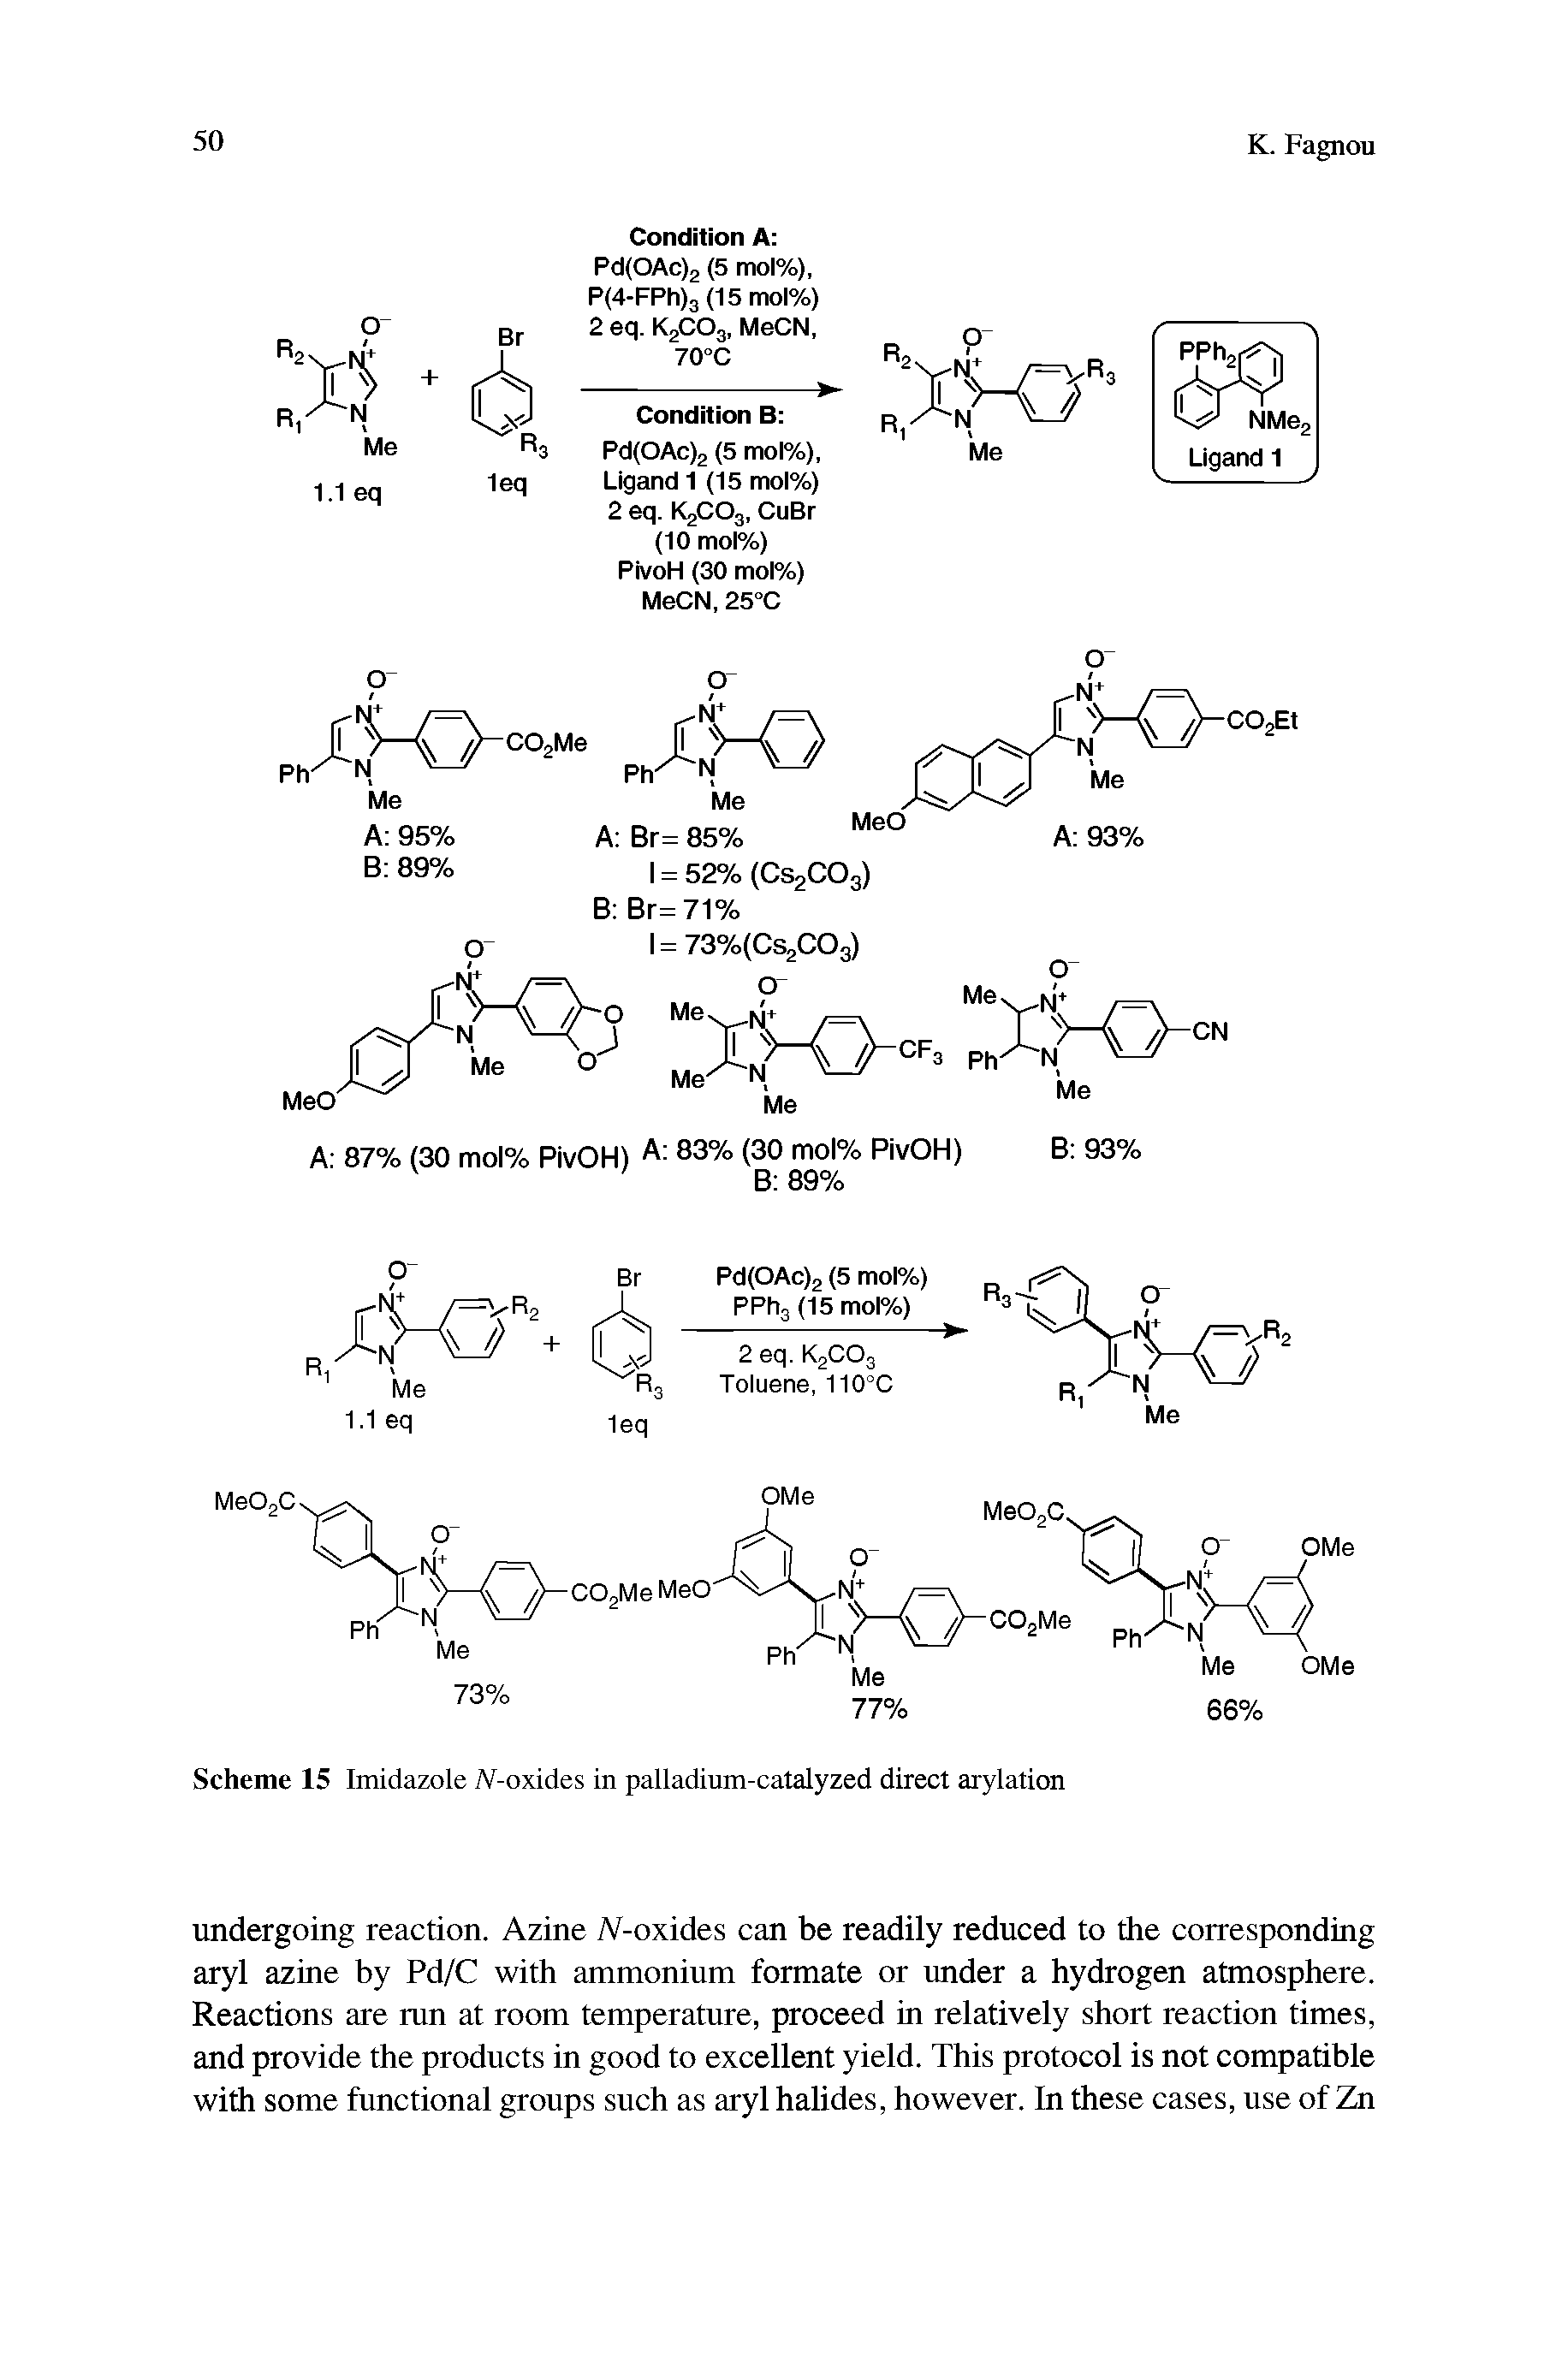 Scheme 15 Imidazole (V-oxides in palladium-catalyzed direct arylation...